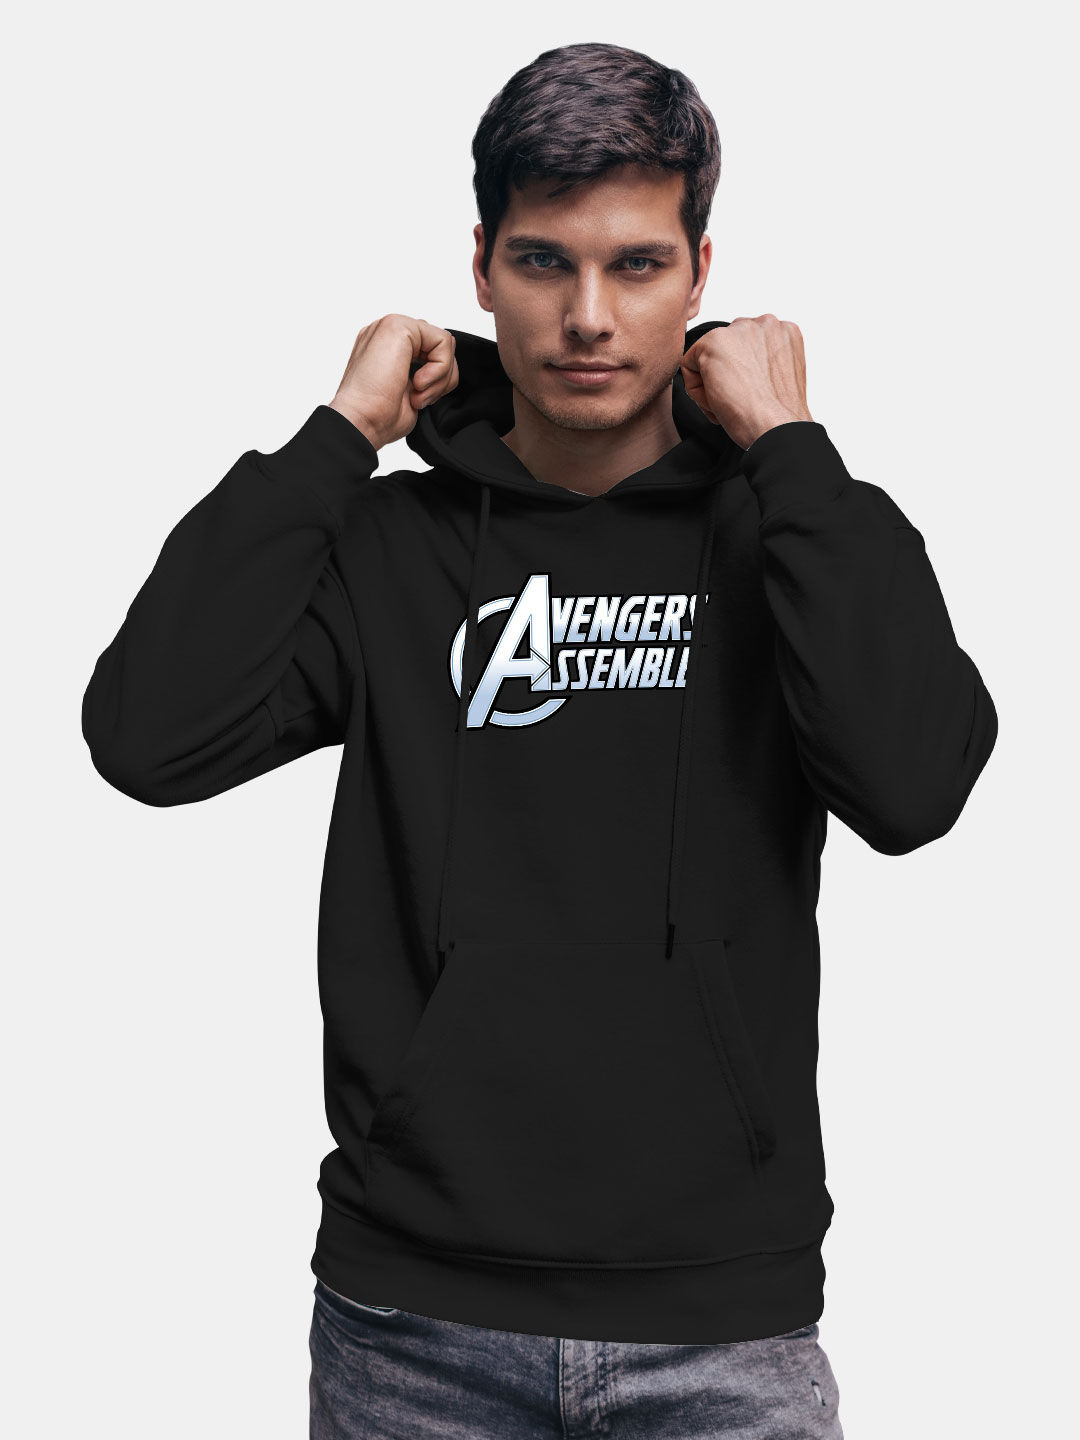 Buy Avengers Assemble Logo - Hoodie Hoodies Online